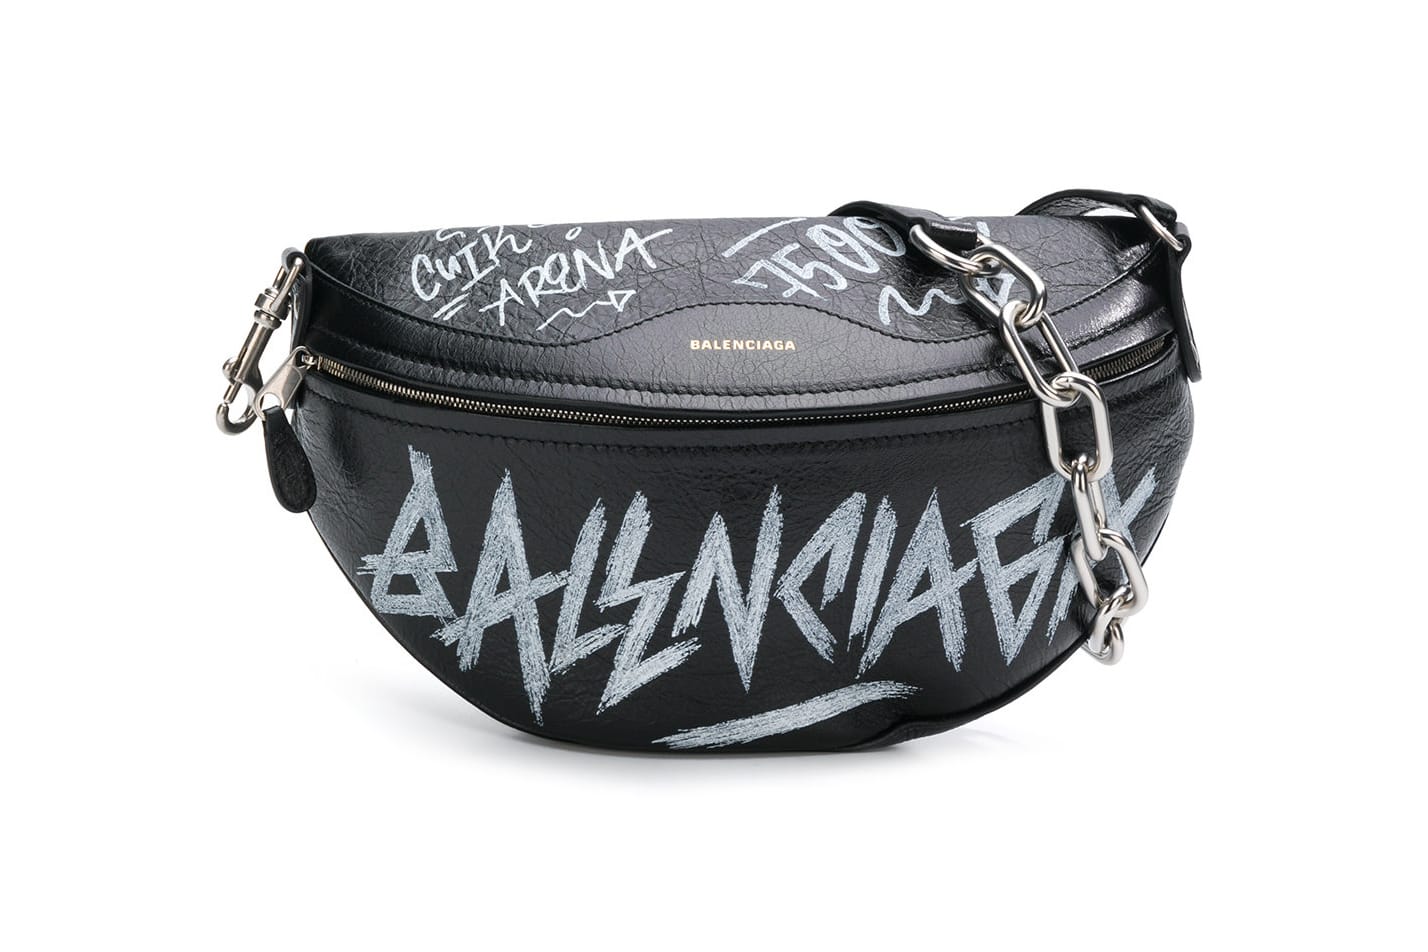 graffiti belt bag